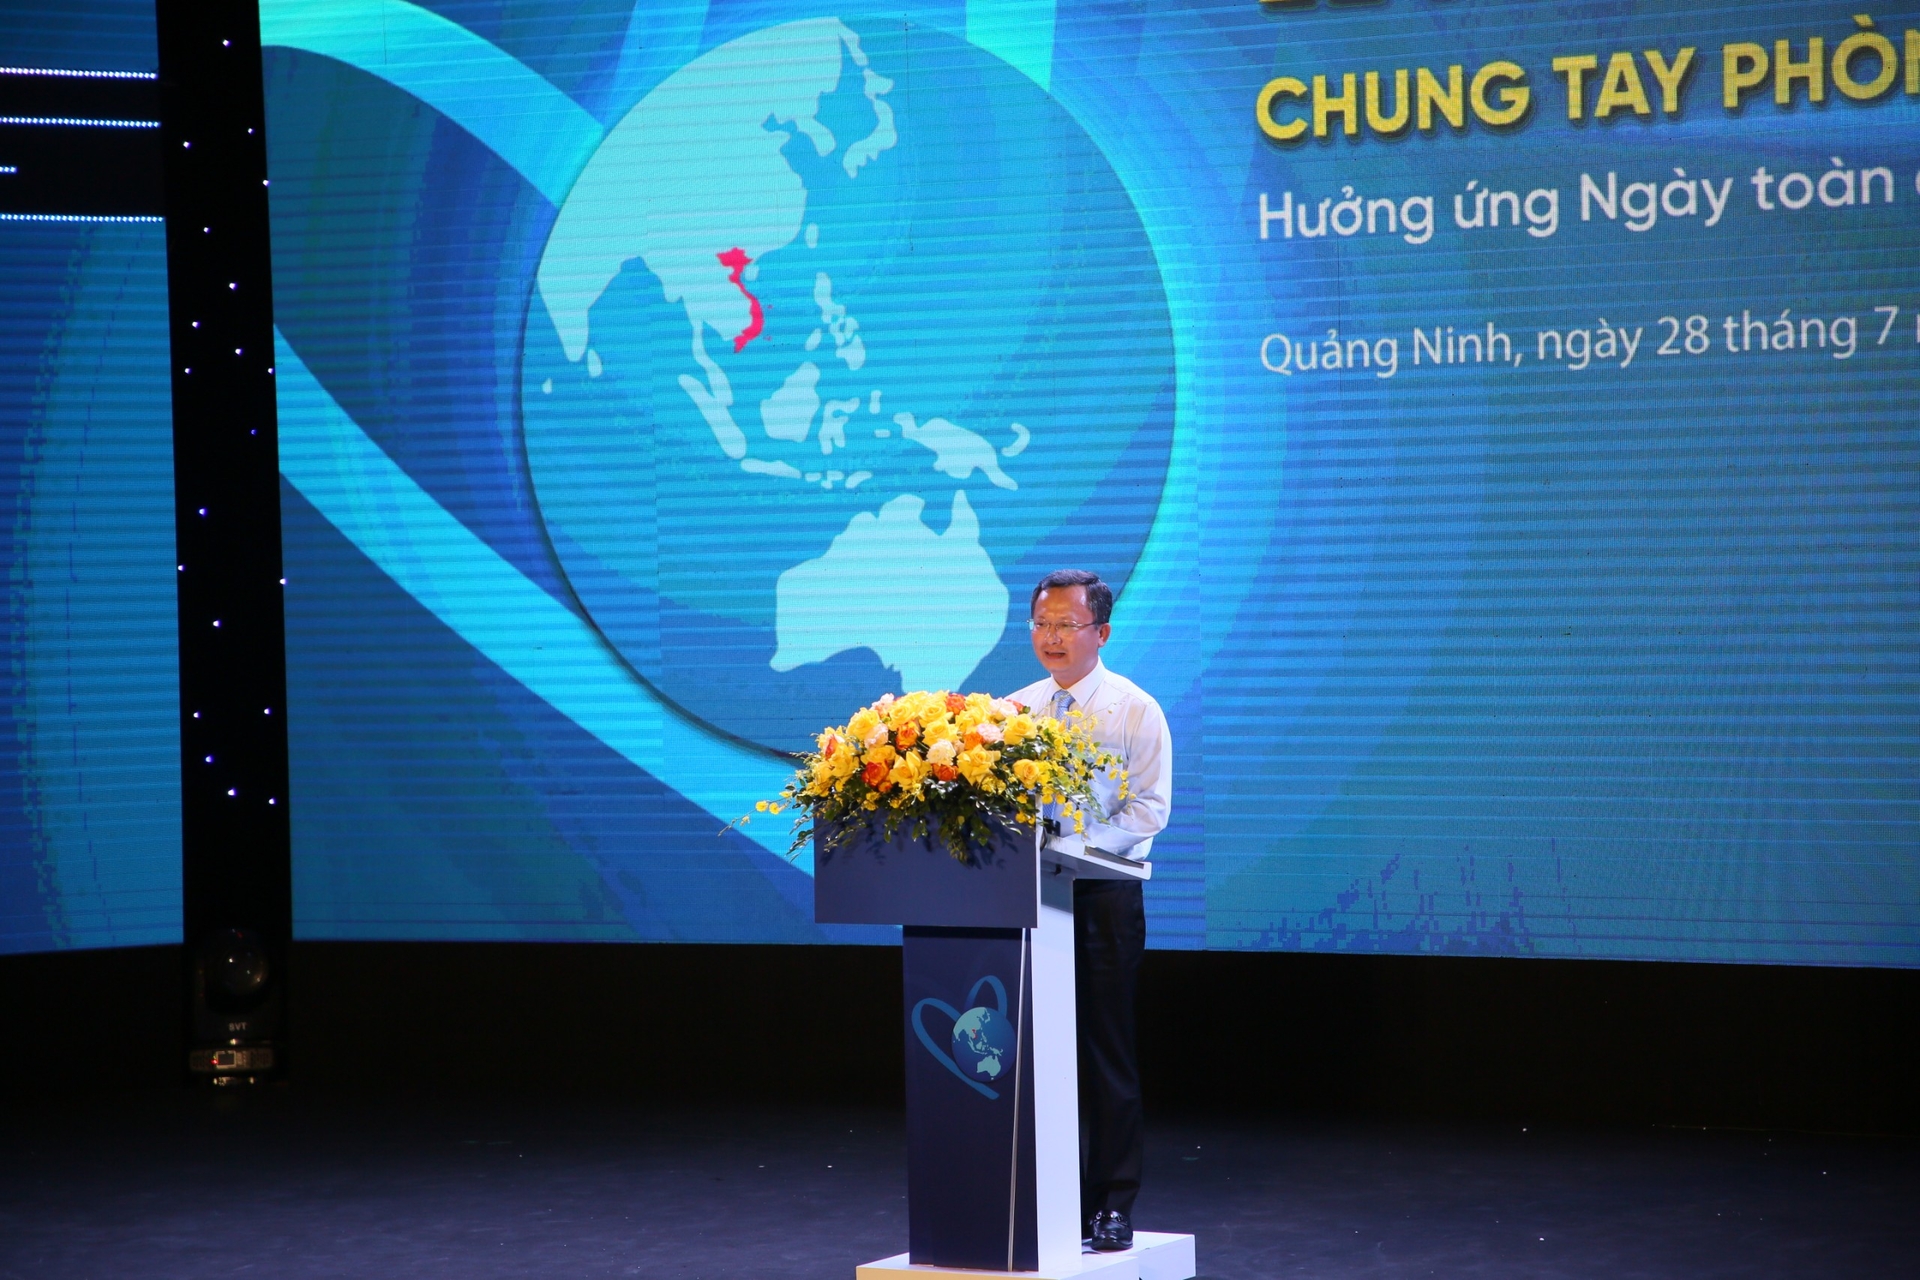 Ông Cao Tường Huy, Quyền Chủ tịch tỉnh Quảng Ninh phát biểu tại hội nghị. Ảnh: Nguyễn Thành.